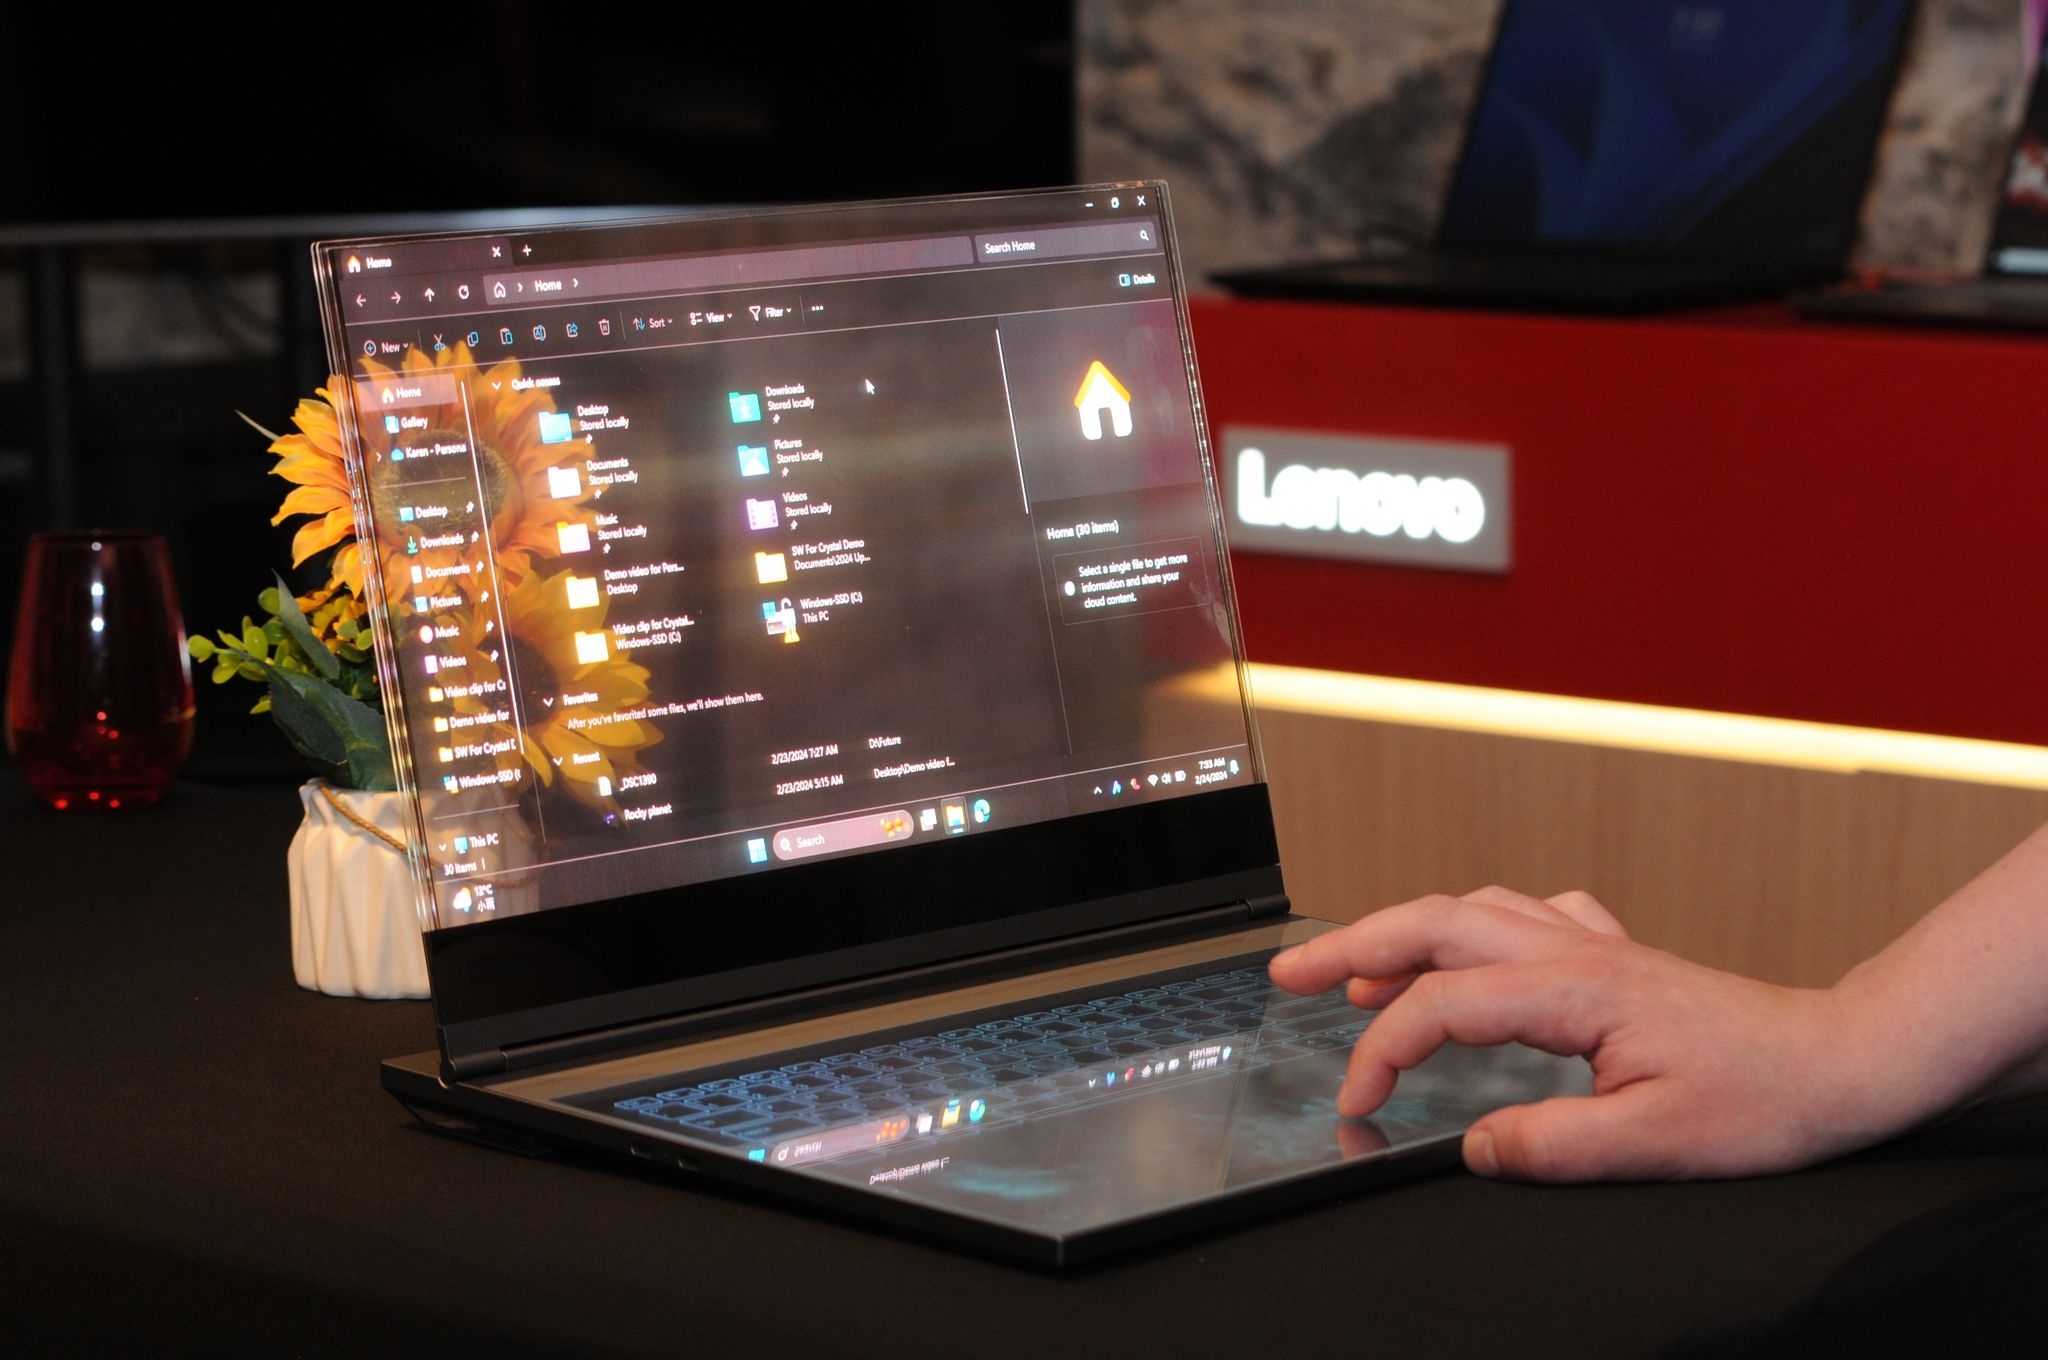 Laptop mit einem durchsichtigen Bildschirm - das Gerät soll unter anderem Designern die Arbeit erleichtern.